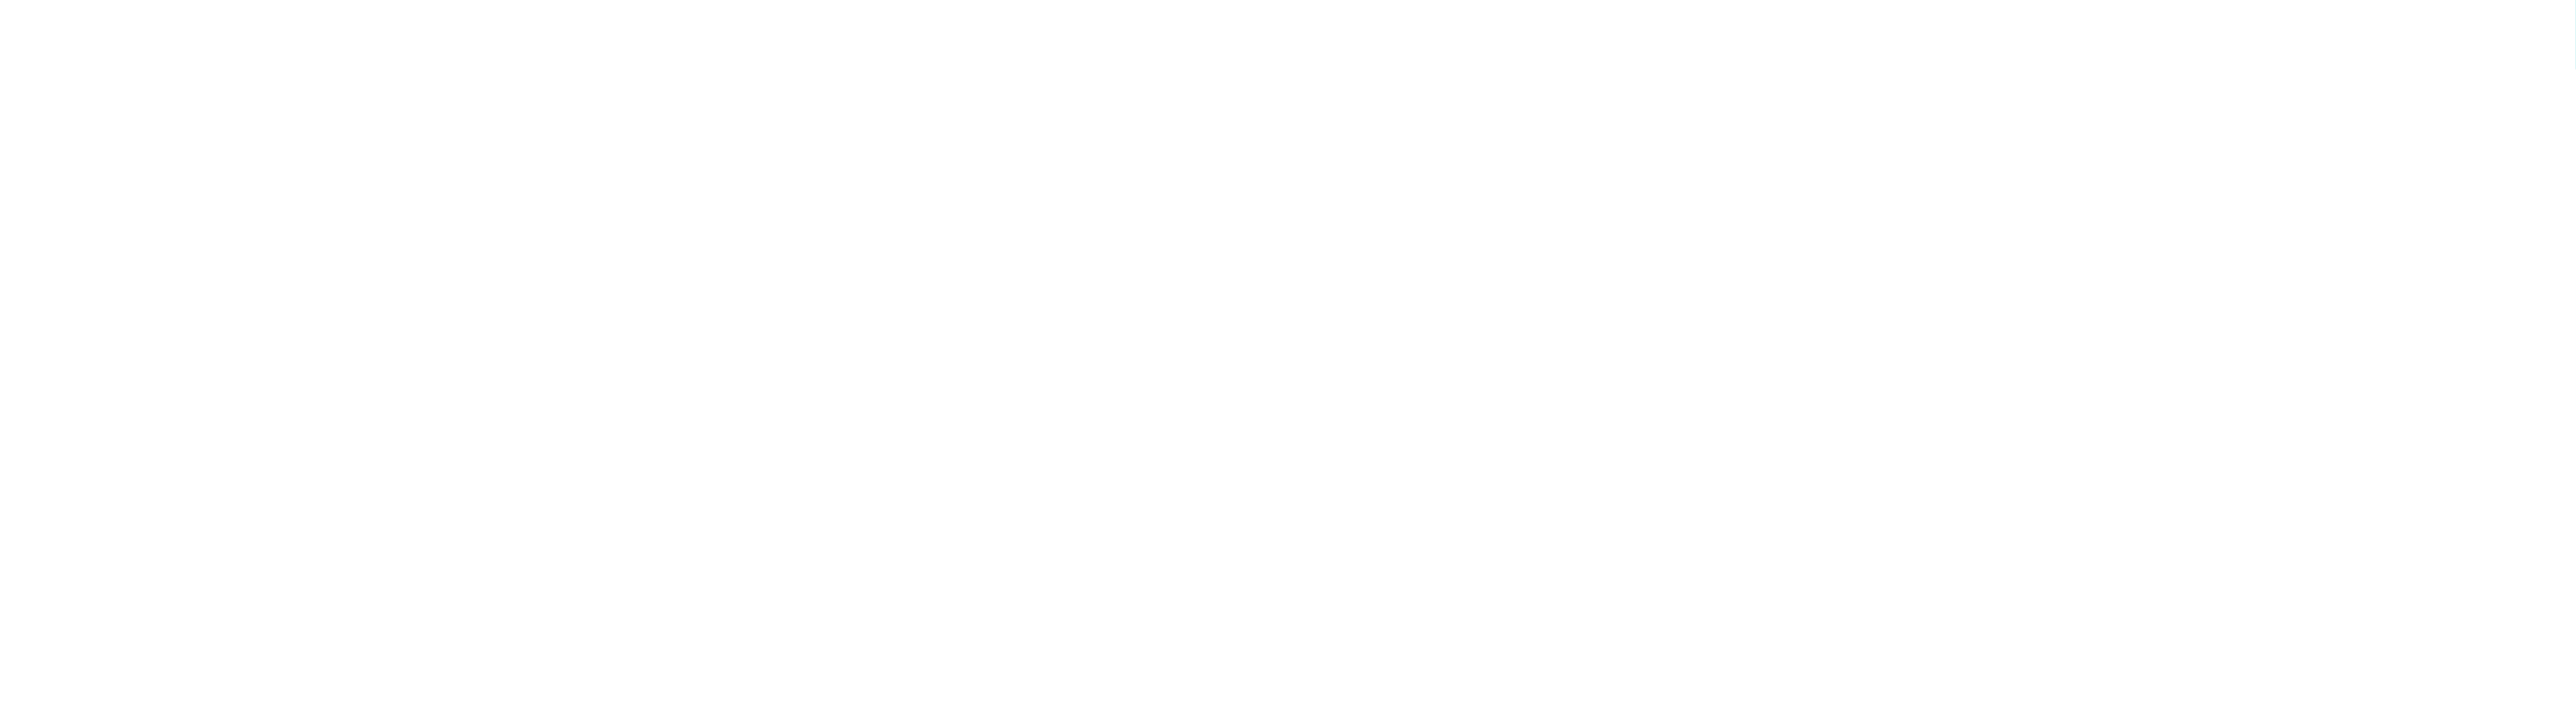 آویز 3 شعله  مدل مکعب مربع کد 1258 در چهار رنگ سفید مشکی استیل بژ-قابلیت تنظیم ارتفاع-ساخت ایران-جنس بدنه آلومینیوم دایکاست آنادایز آویز مکعب مربع:به صورت 3 شعله - رنگ بندی: م